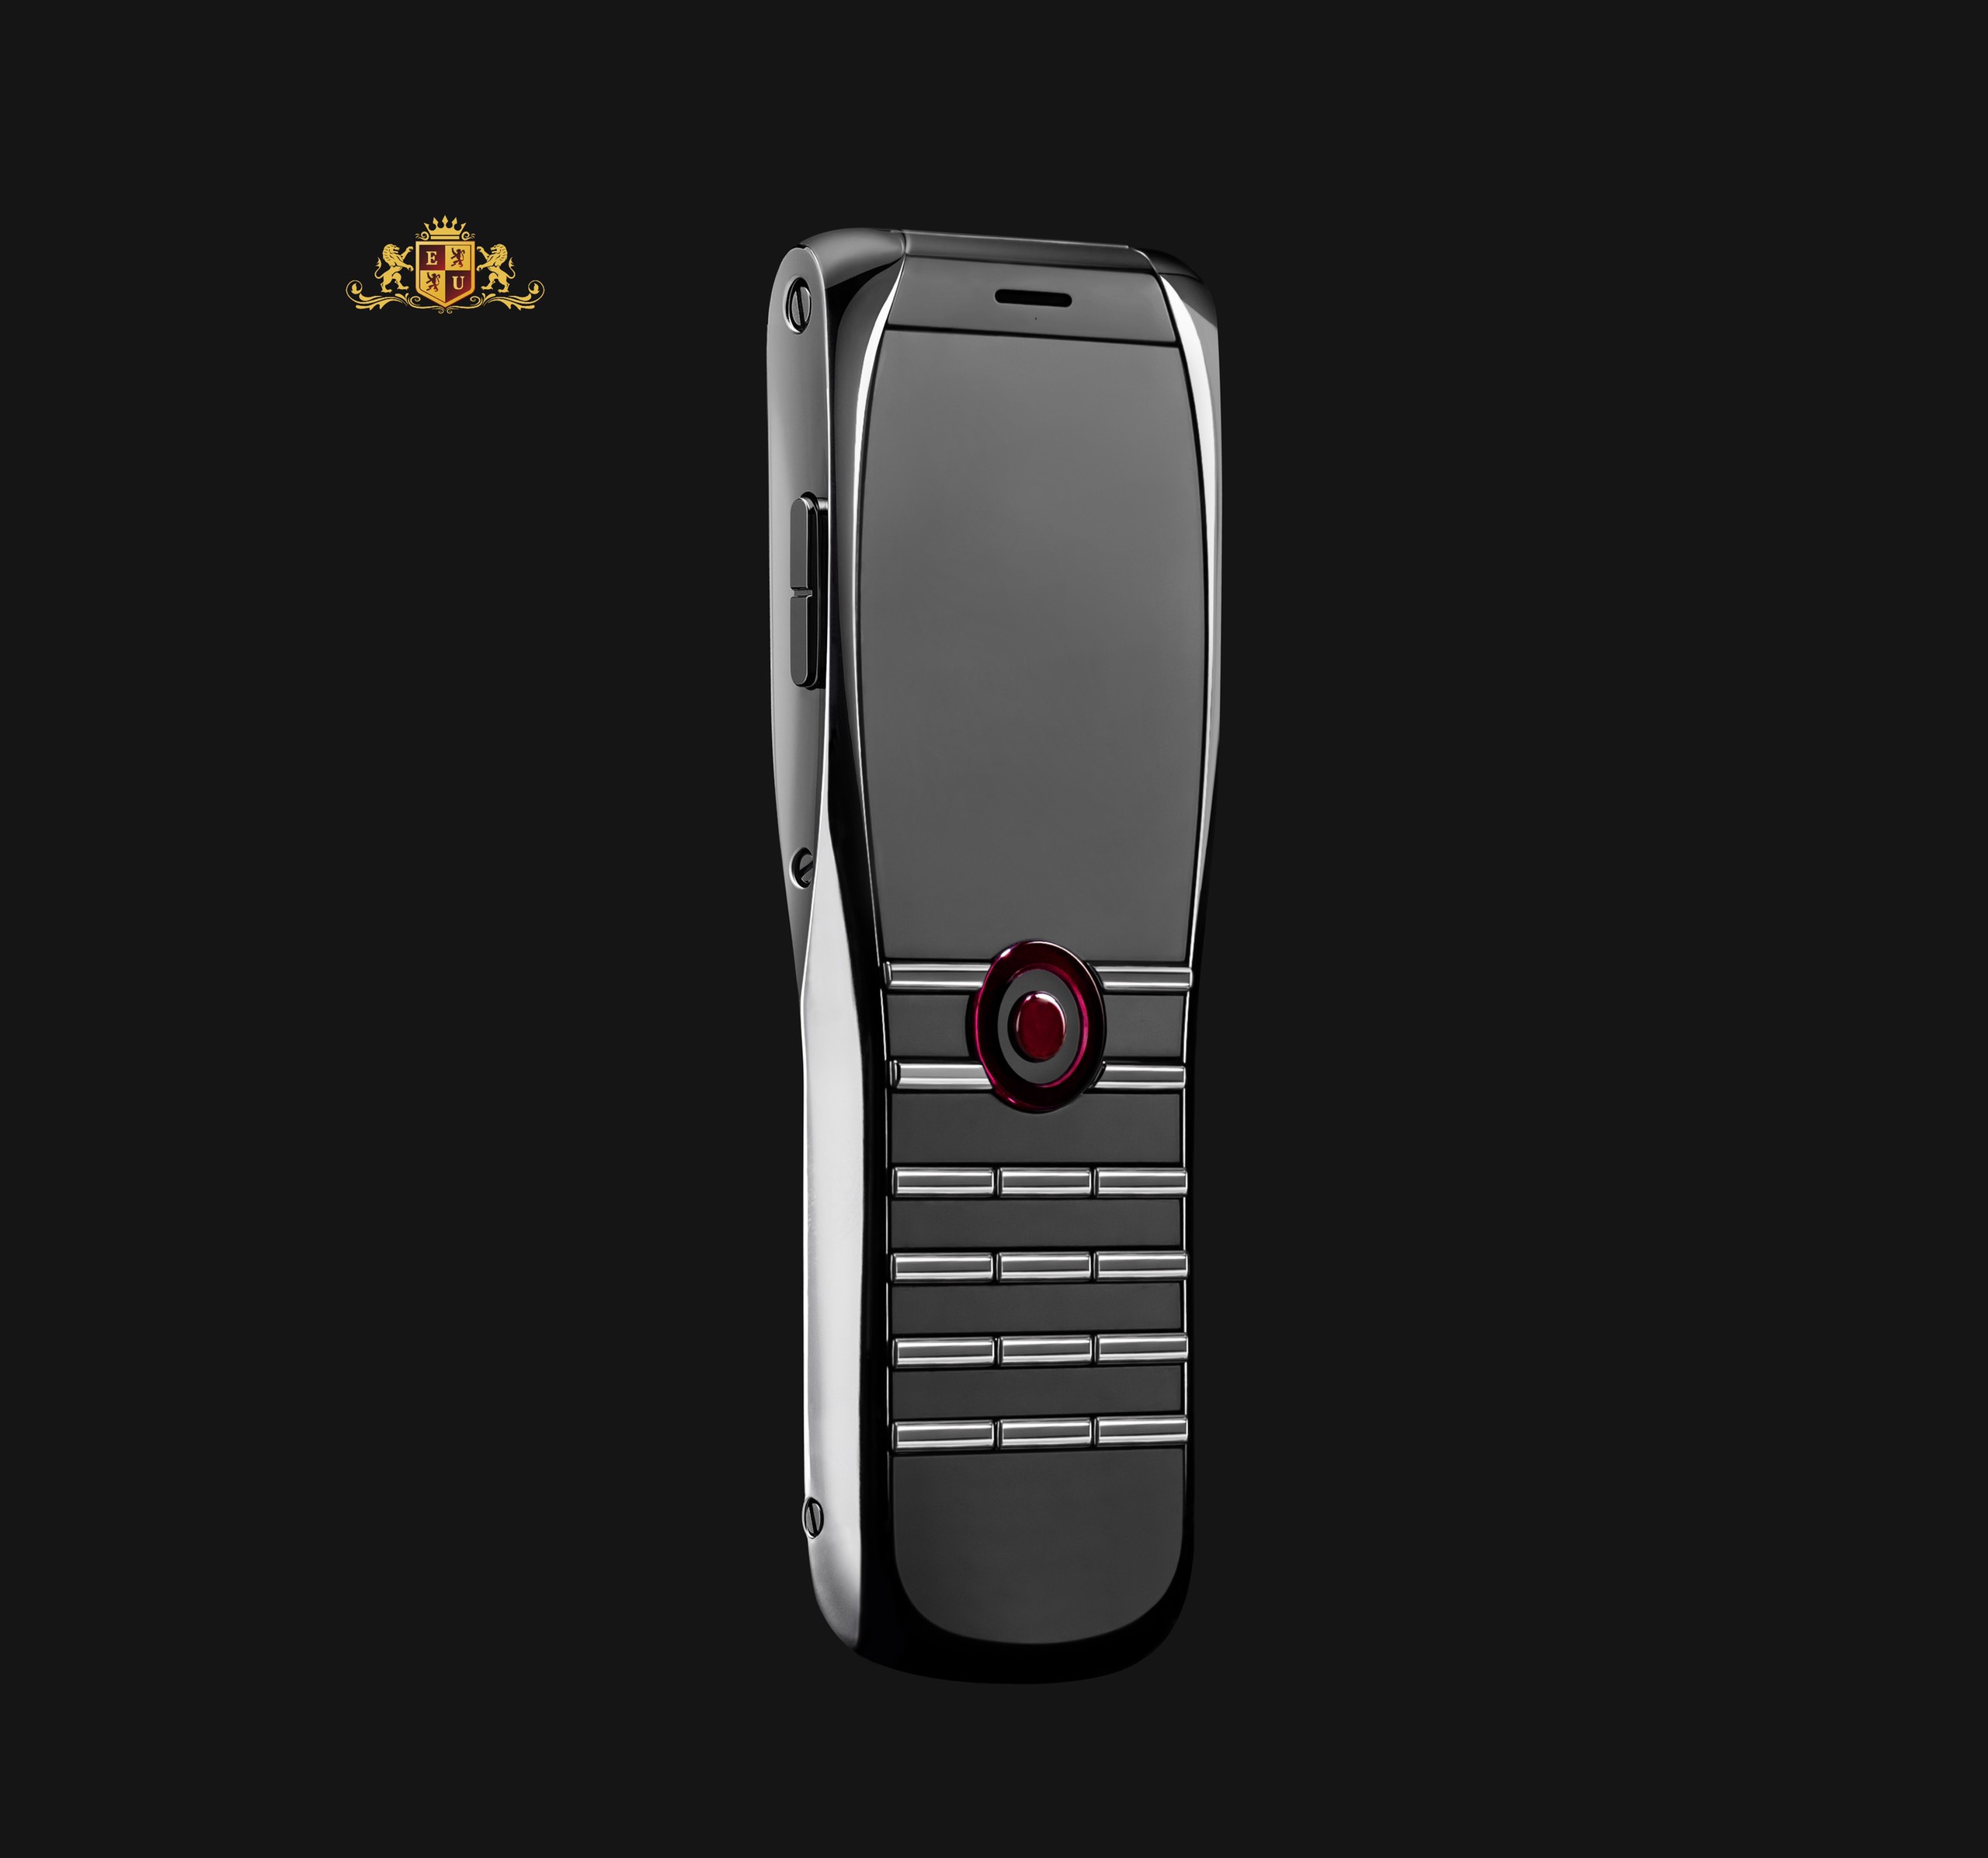  XOR Titanium Classic - Siêu phẩm điện thoại đến từ Anh Quốc